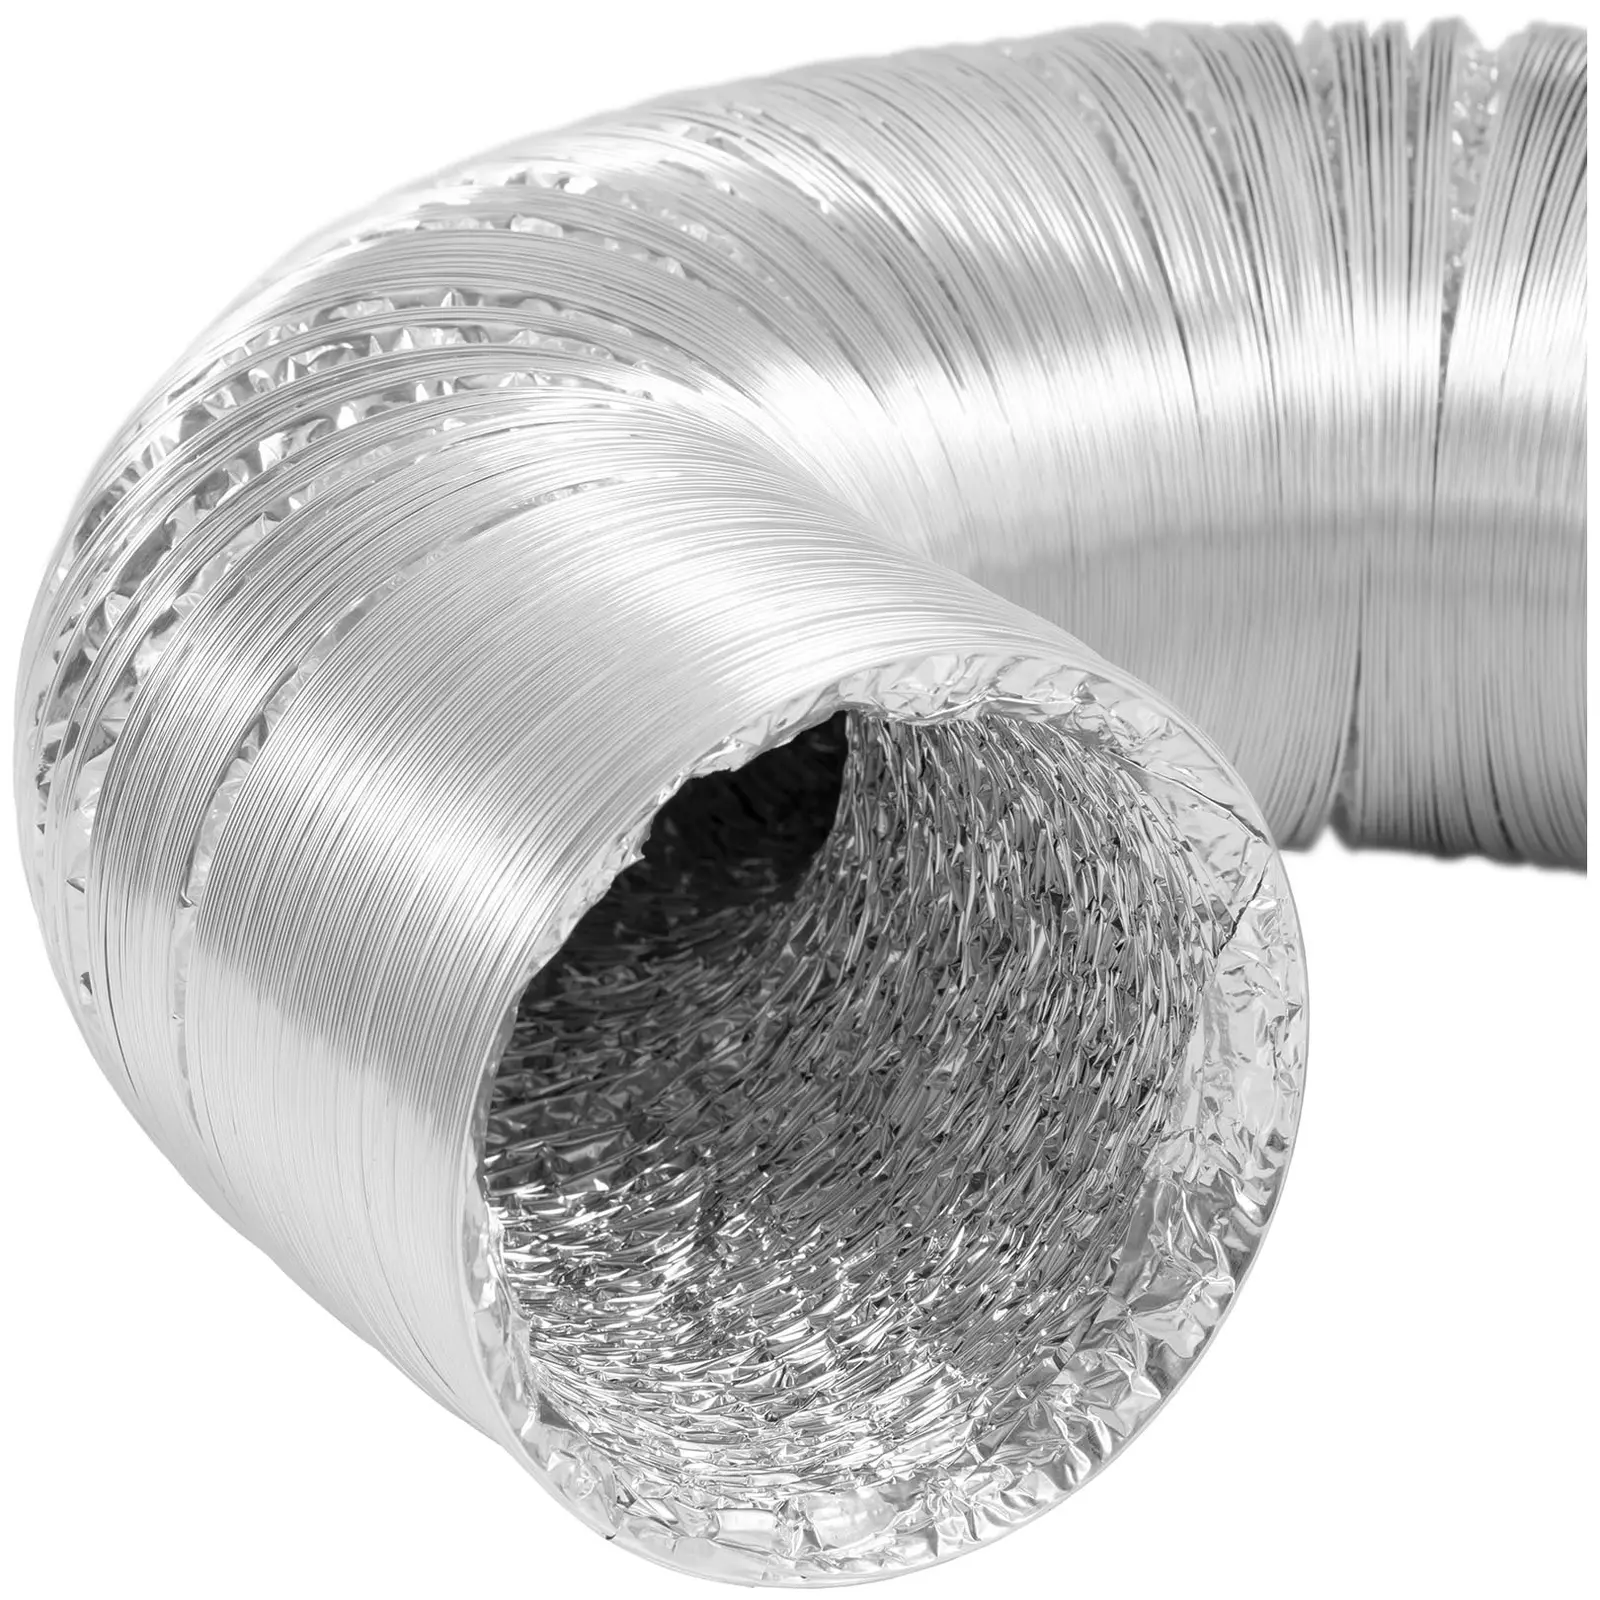 Gaine de ventilation - Ø 125 mm - longueur 10 m - aluminium